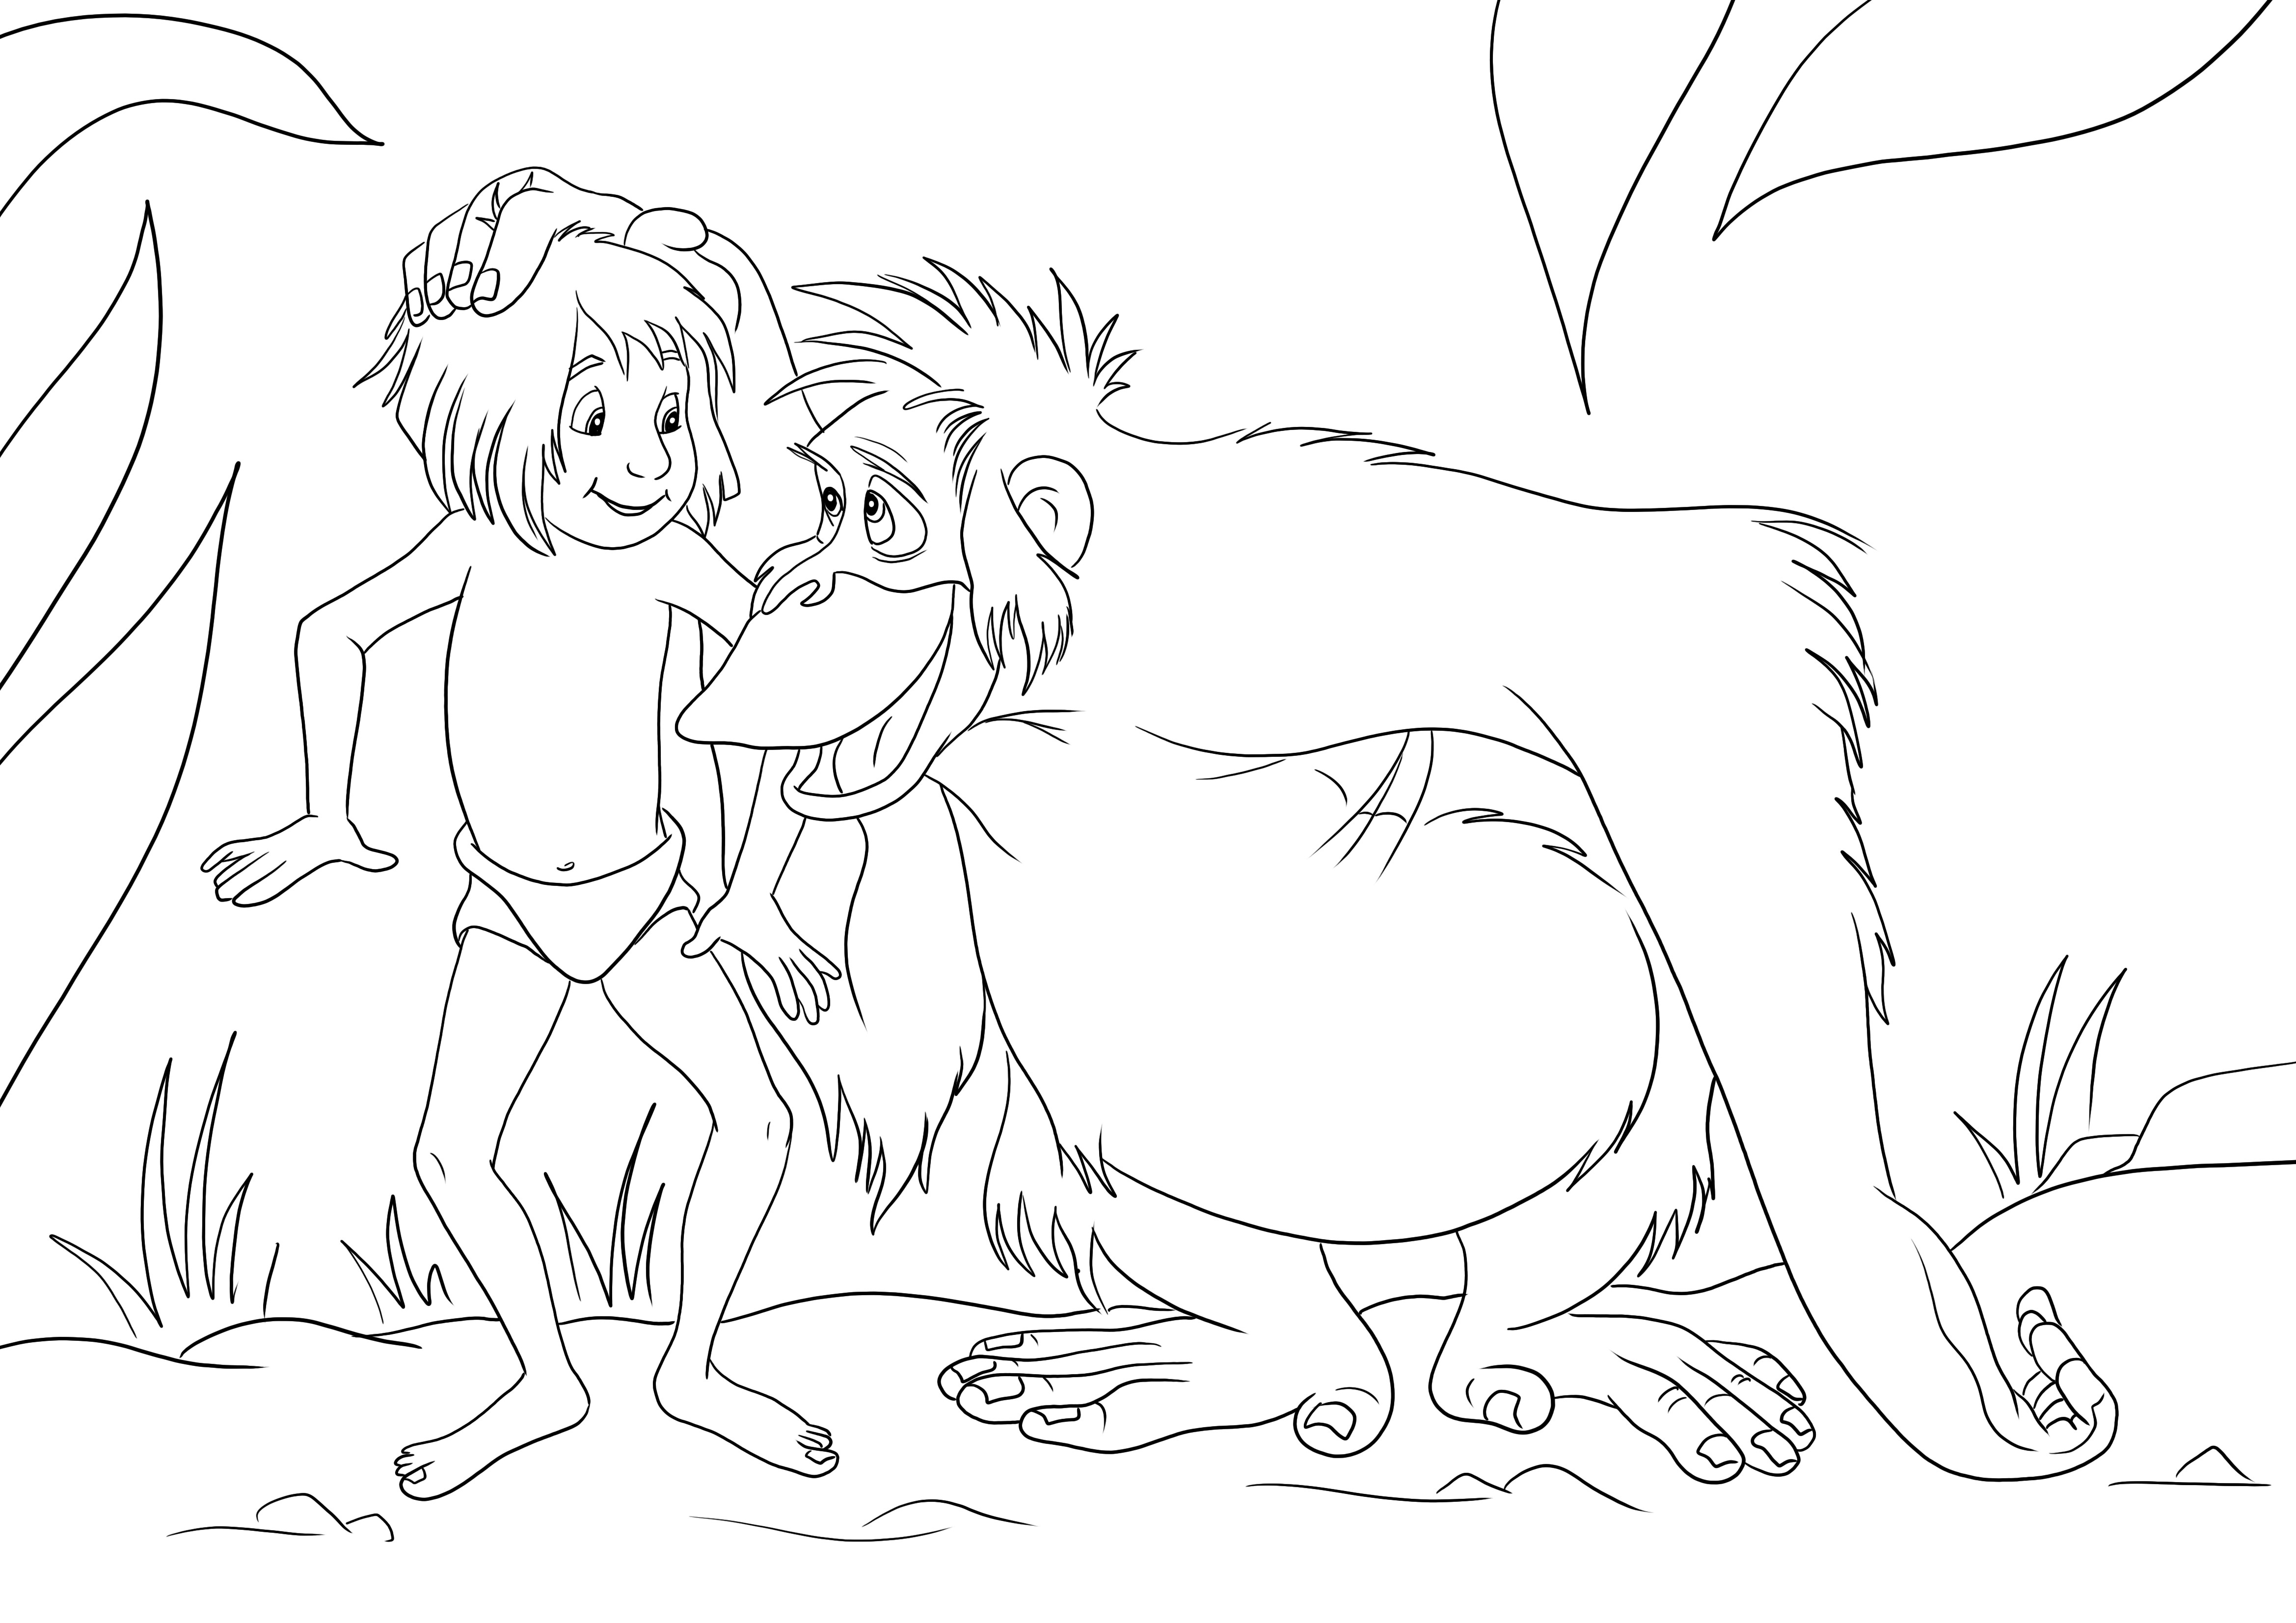 Mowgli și King Louie este o foaie de colorat ușoară, gata pentru a fi descărcată gratuit